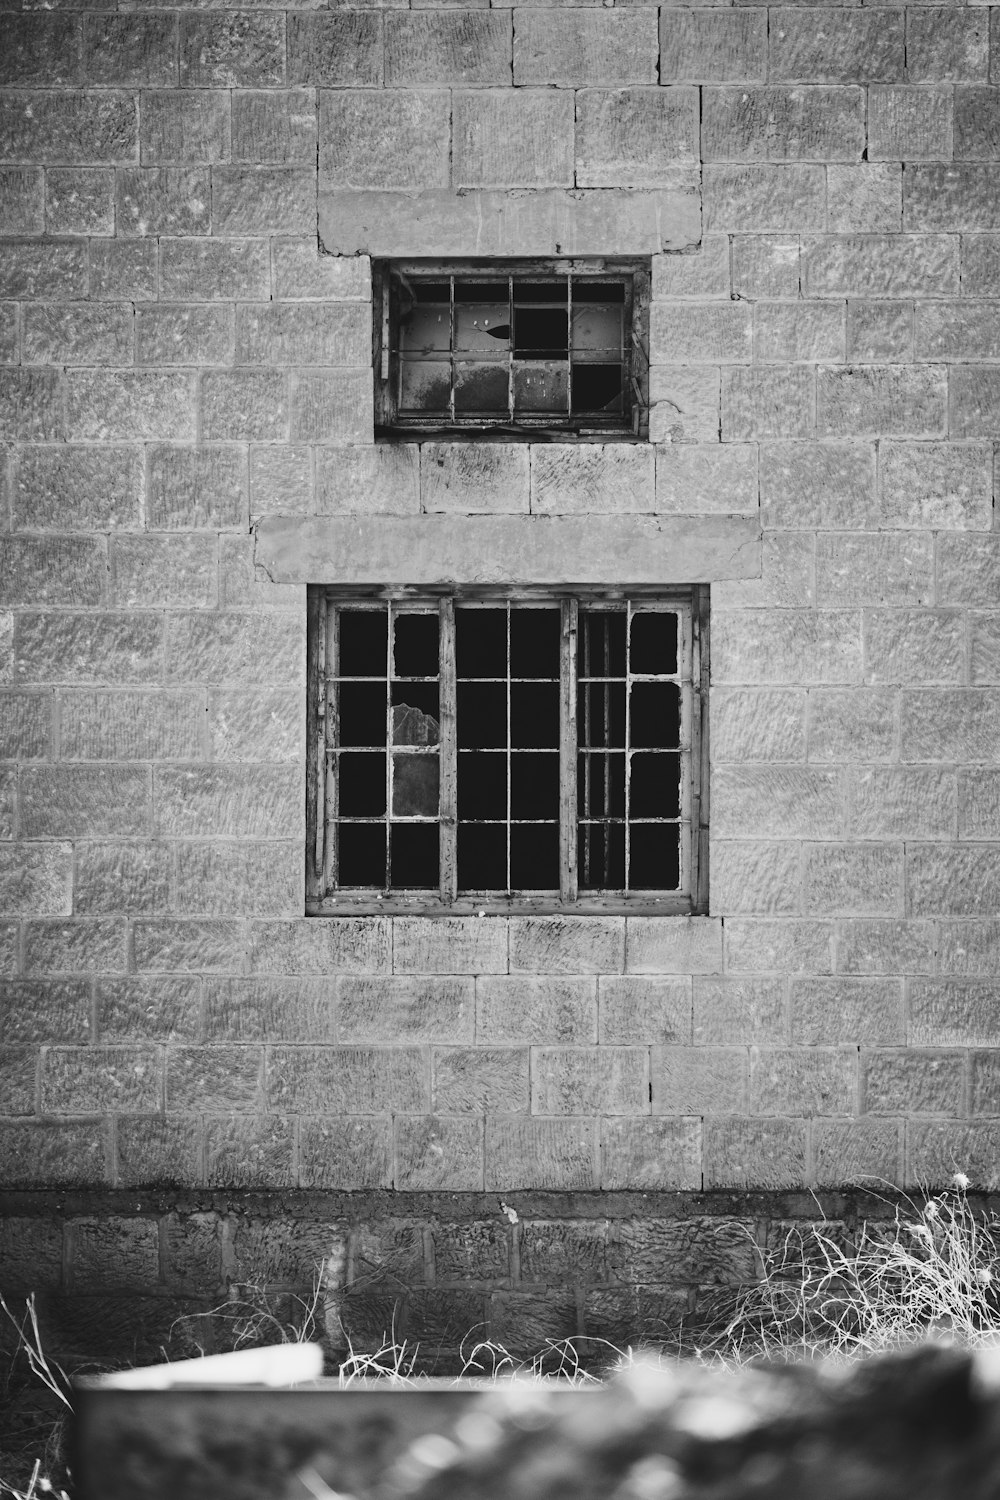 レンガの壁の窓のグレースケール写真